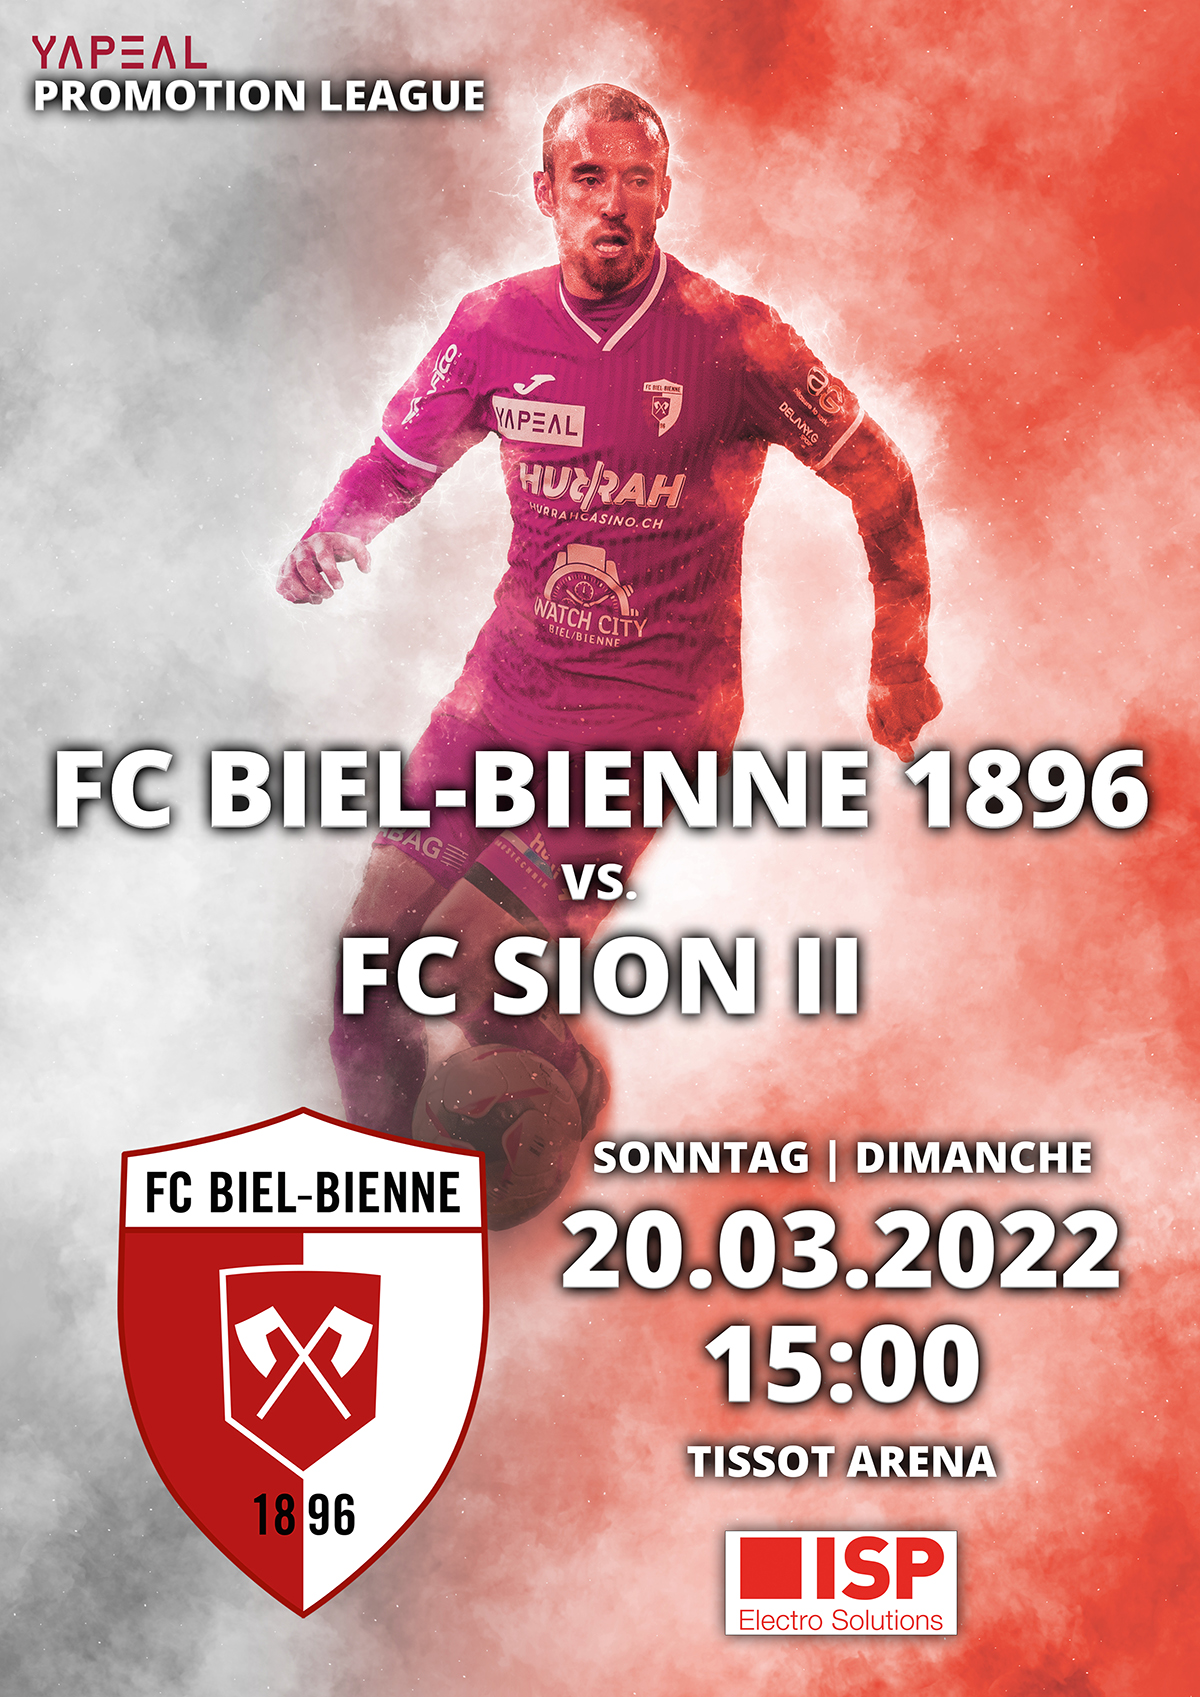 FC Biel-Bienne 1896 vs. FC Sion II